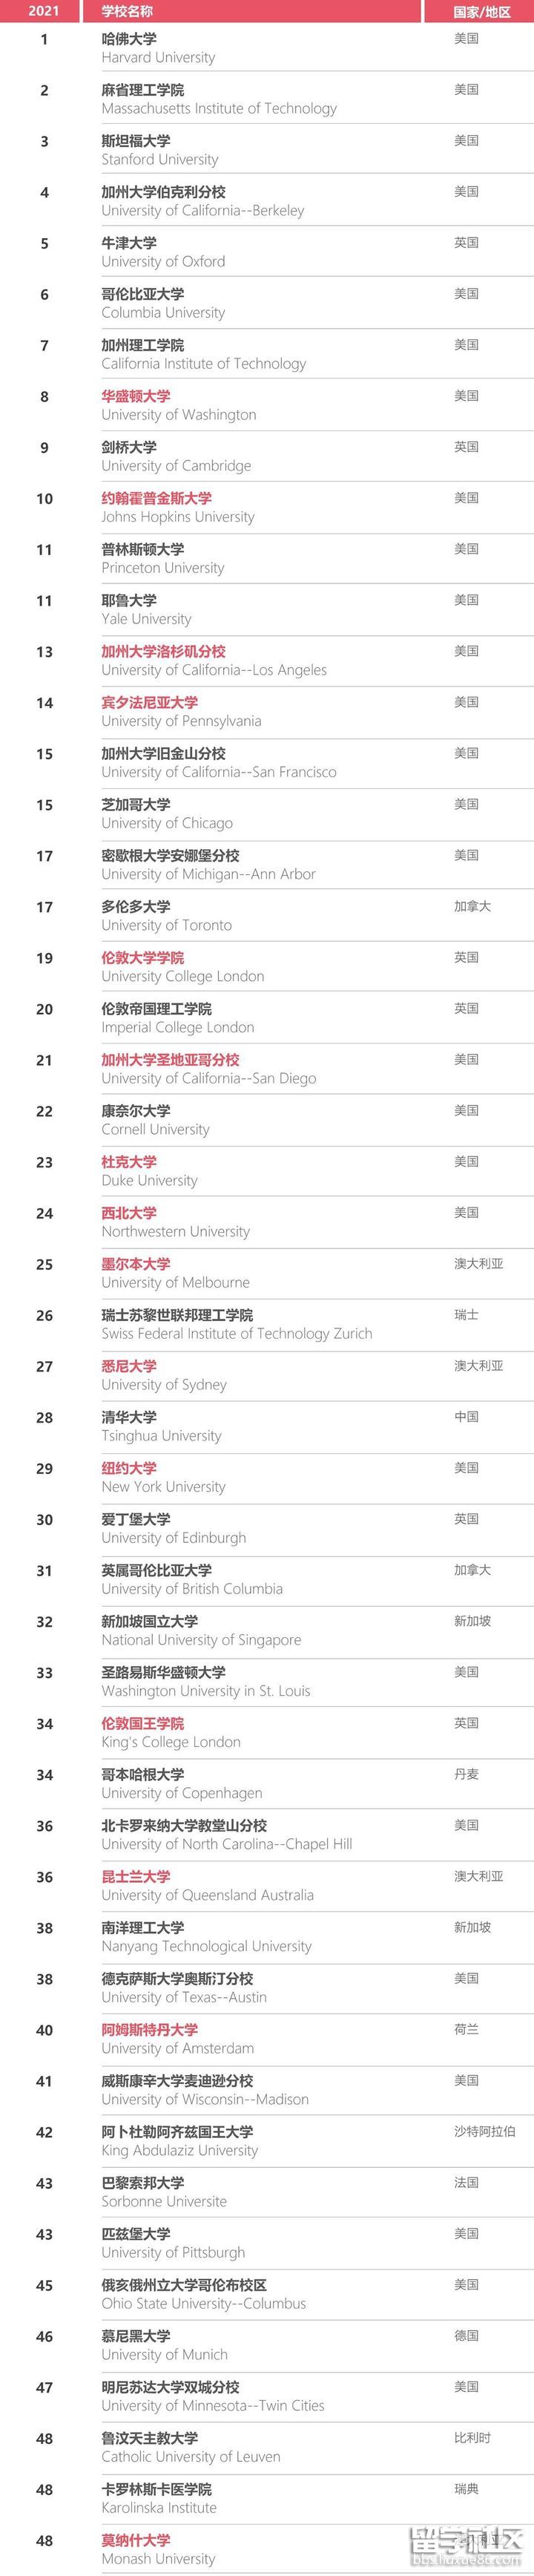 世界大学排名.jpg